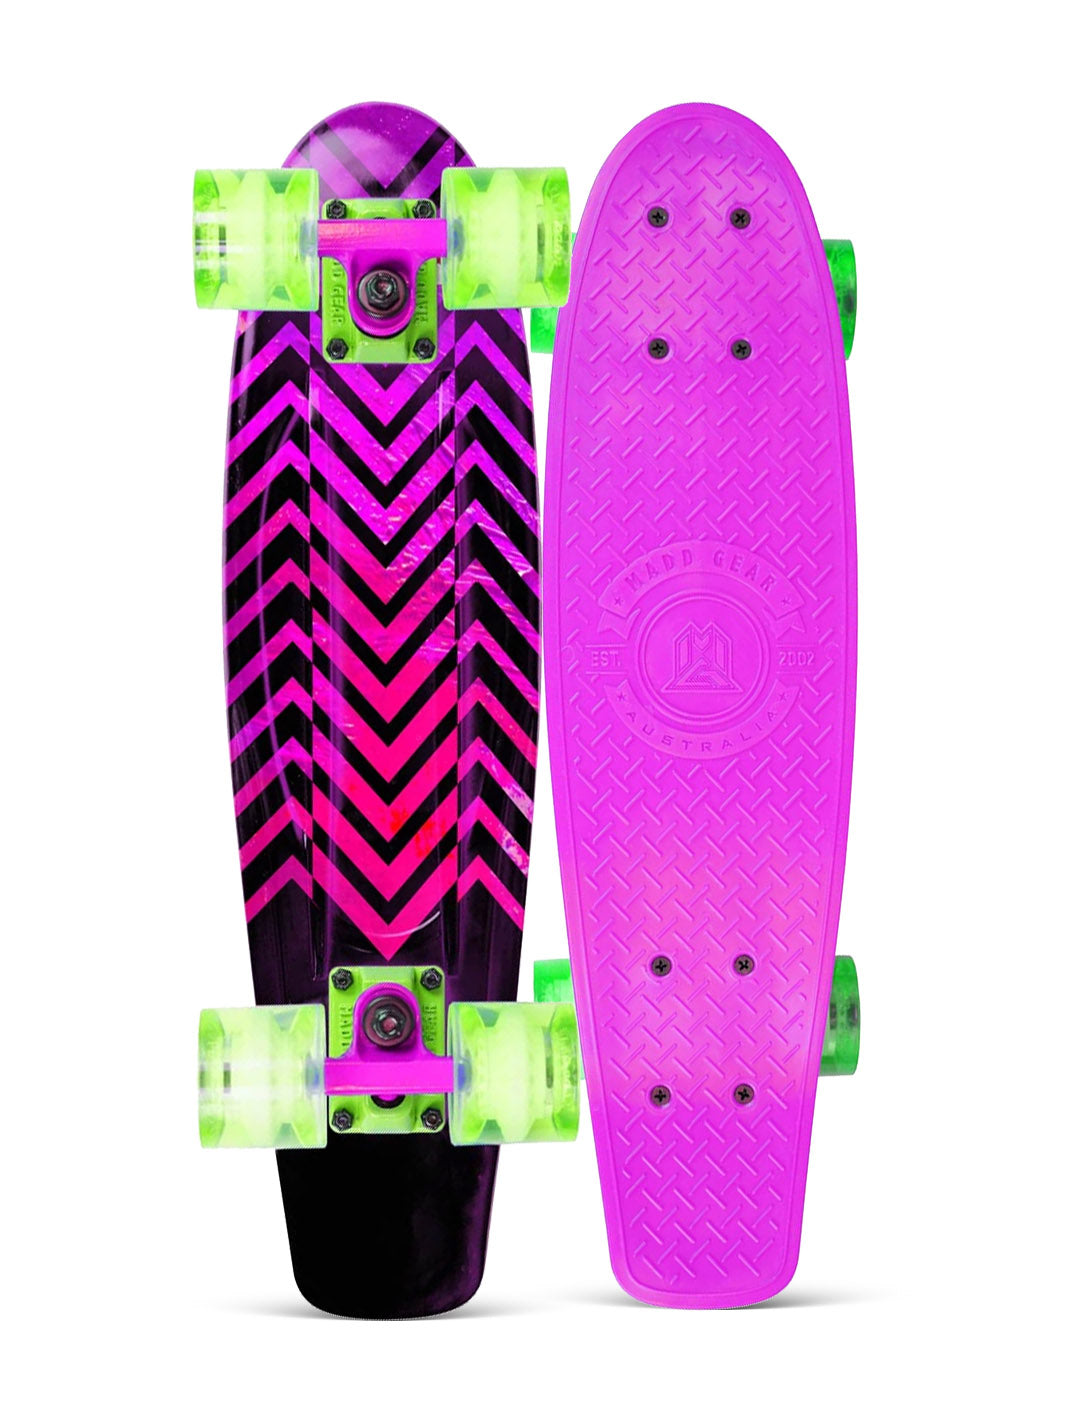 Madd Gear Retro Skateboard Penny Plastic Kids Complete Board Pink Green